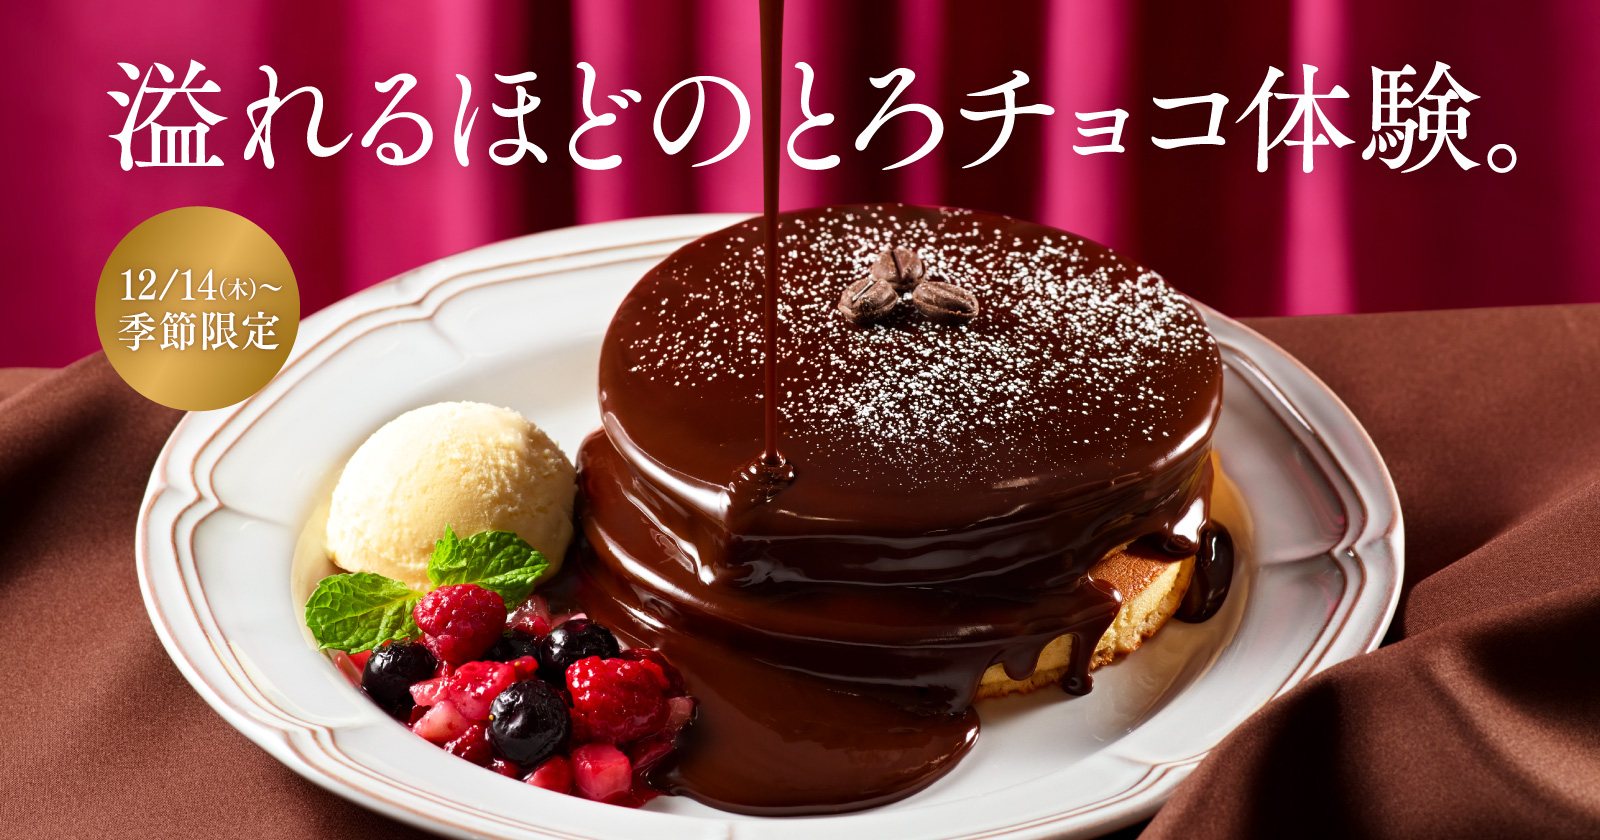 珈琲館「とろける濃厚チョコソースのホットケーキ」発売